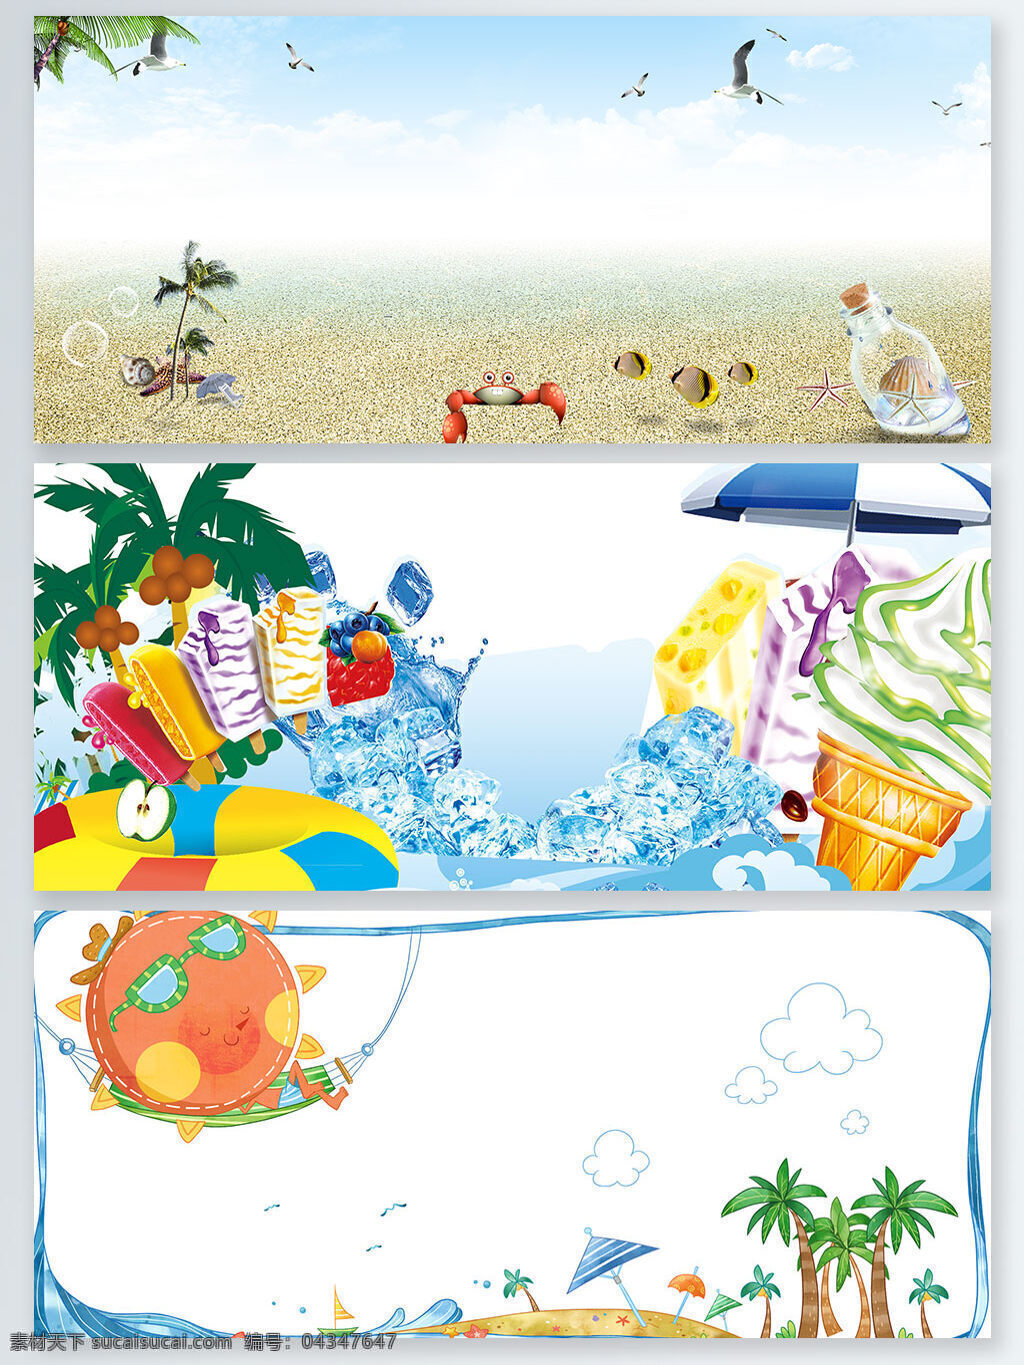 卡通 可爱 童趣 冰激凌 冰块 椰子树 创意 背景 沙滩 创意背景 banner 冰糕 遮阳伞 海鸥